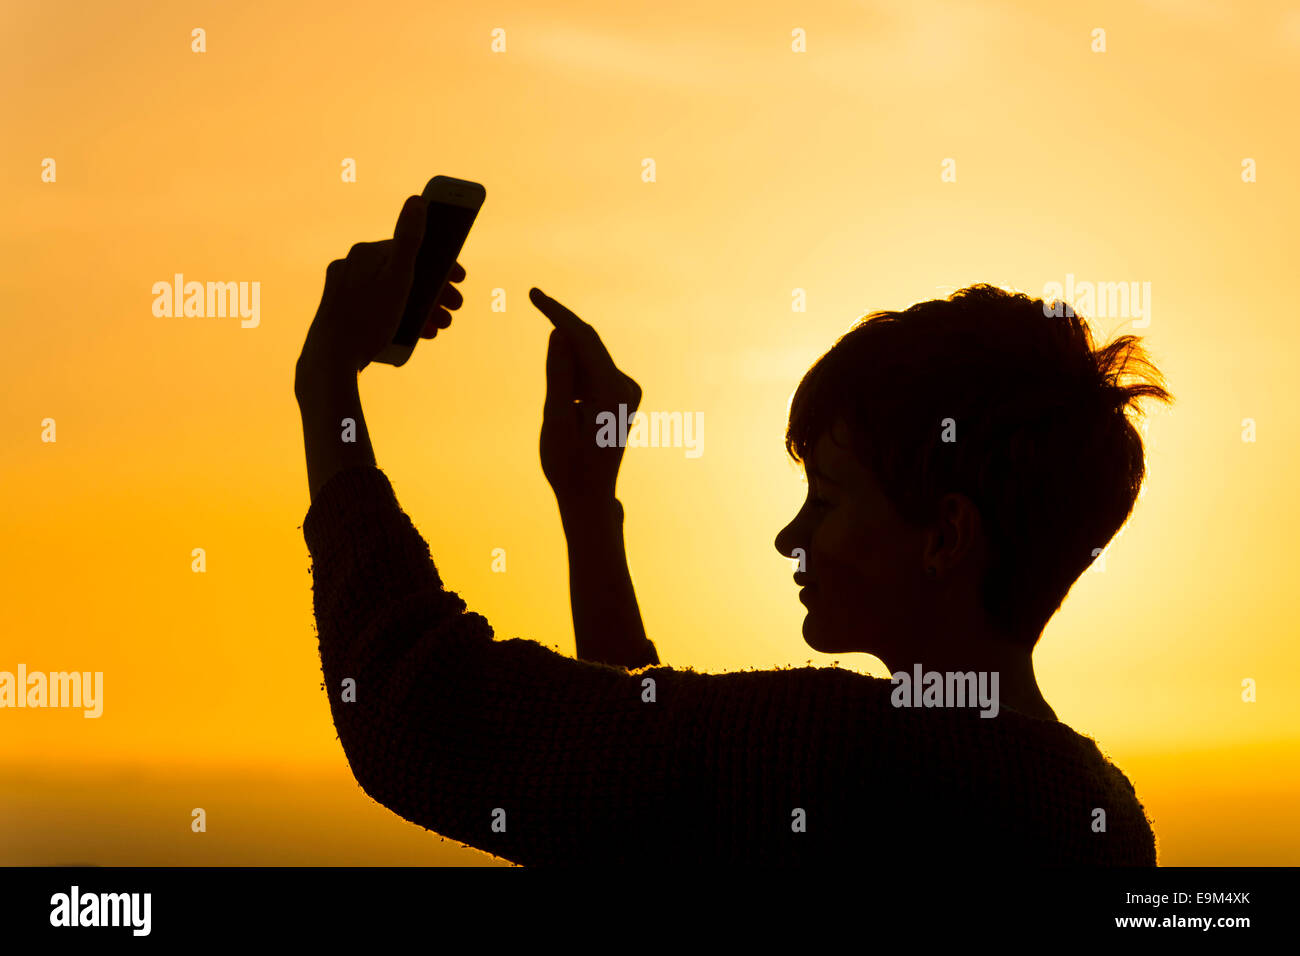 Eine Silhouette Mädchen nutzt ein Handy auf eine Roaming-Verpackung während des Urlaubs während des Sonnenuntergangs. Stockfoto